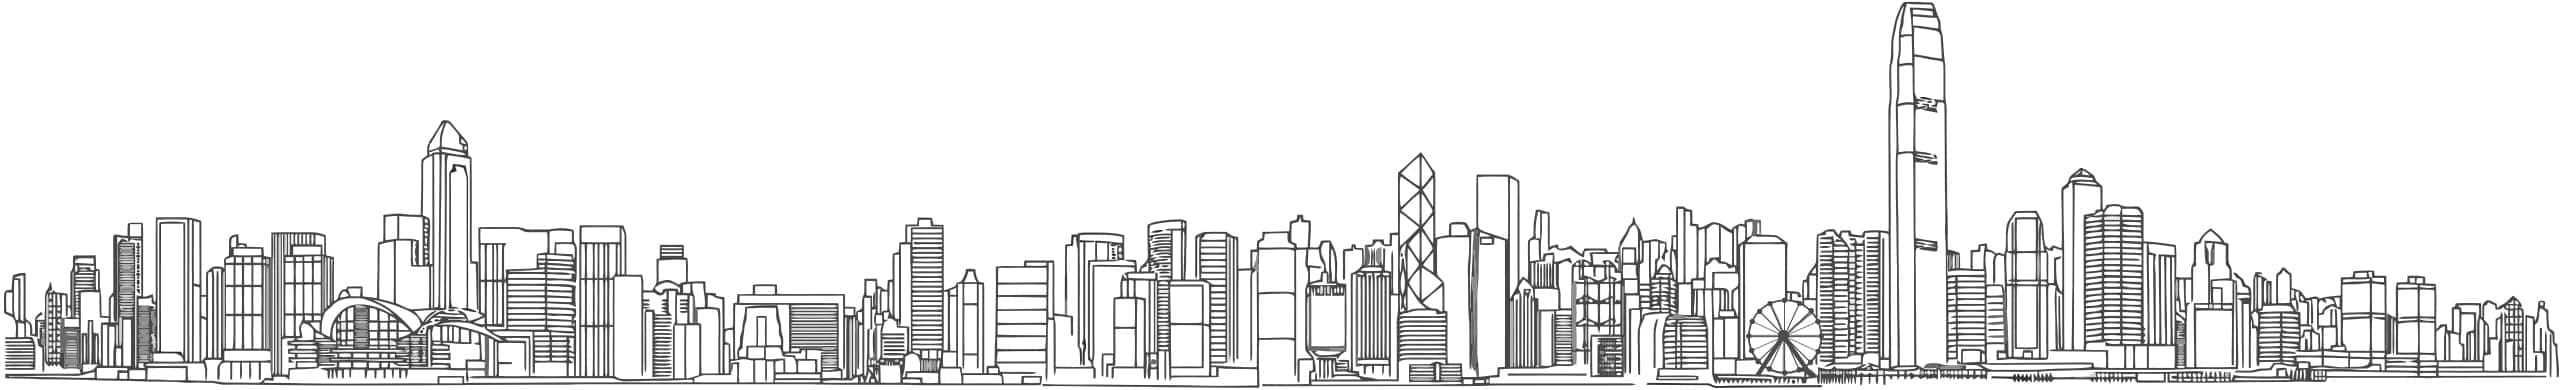 品牌形象设计 Archives - 温国伦香港网页设计